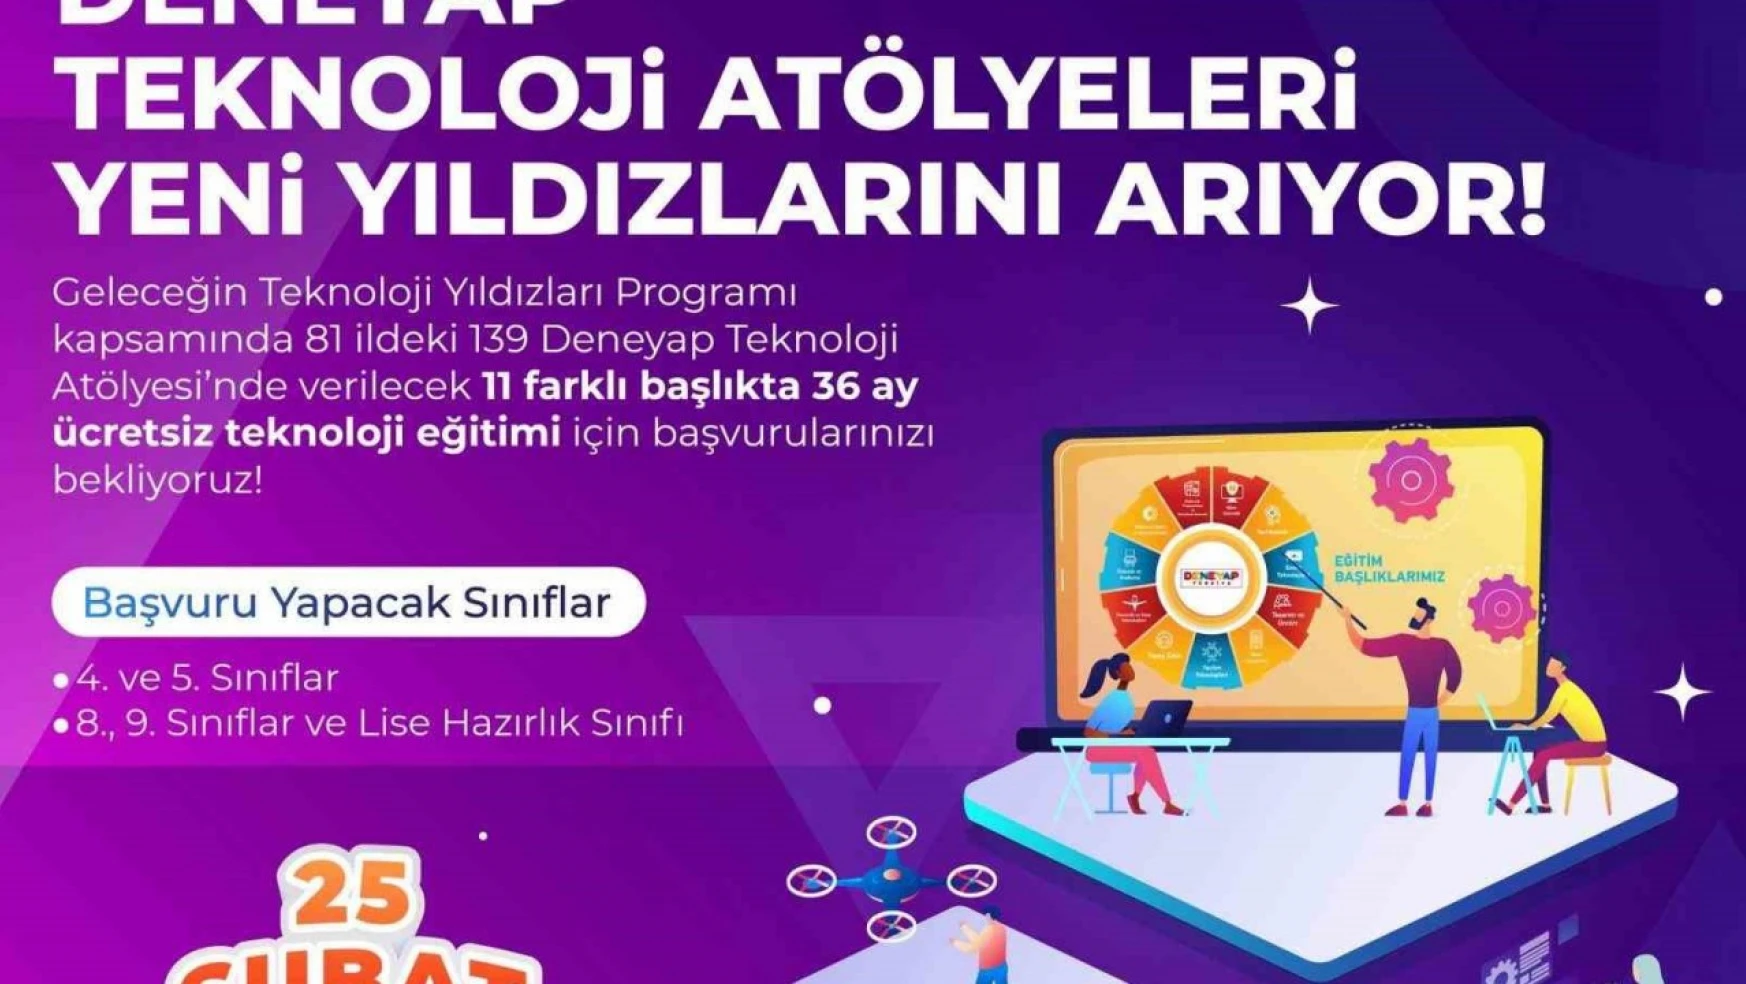 DENEYAP Teknoloji Atölyeleri Türkiye'nin yetenekli çocukları geleceğe hazırlıyor